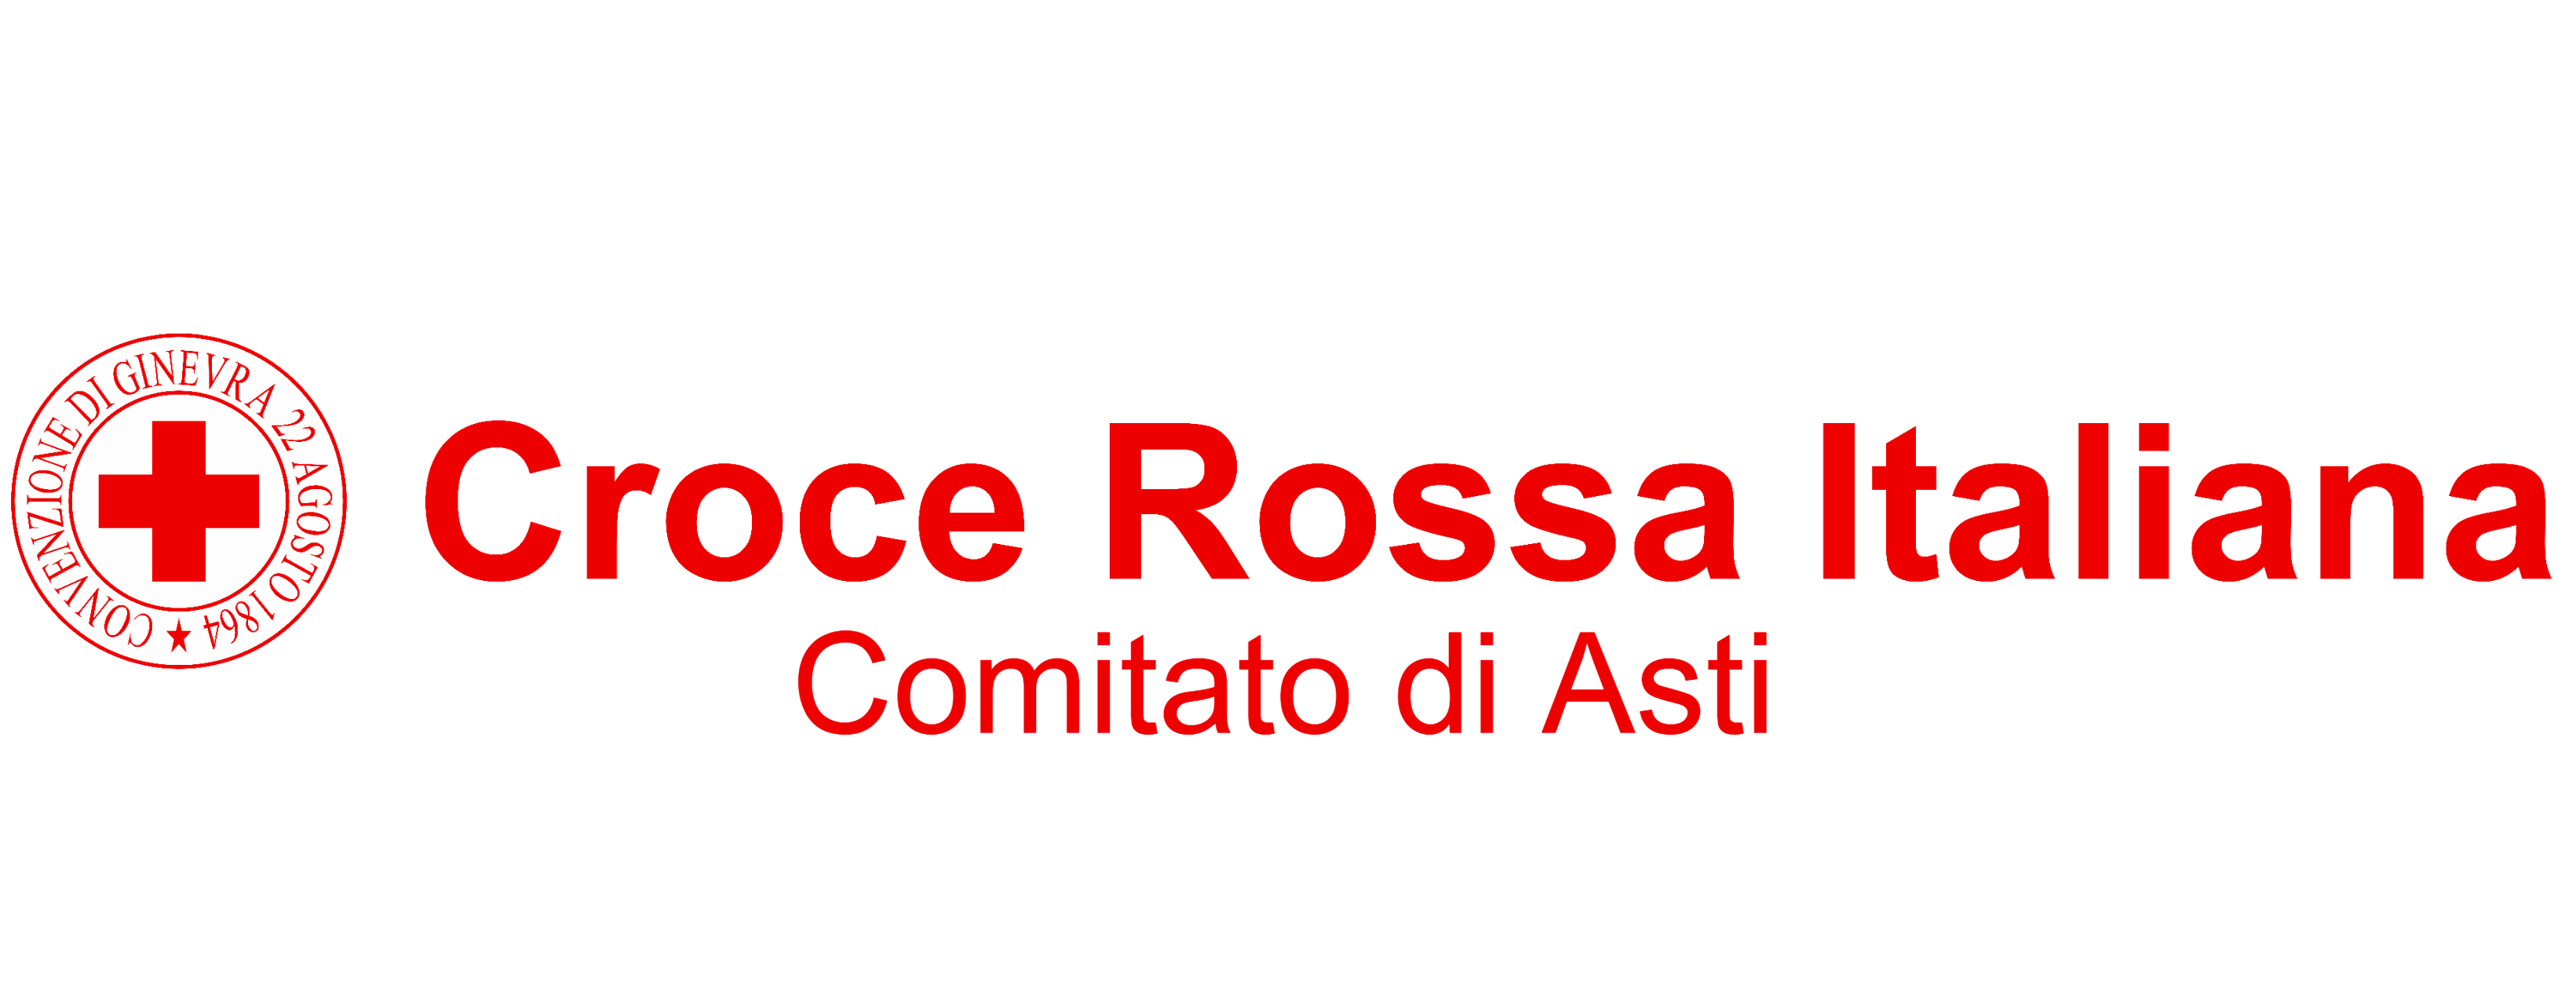 Croce Rossa Italiana - Comitato di Asti